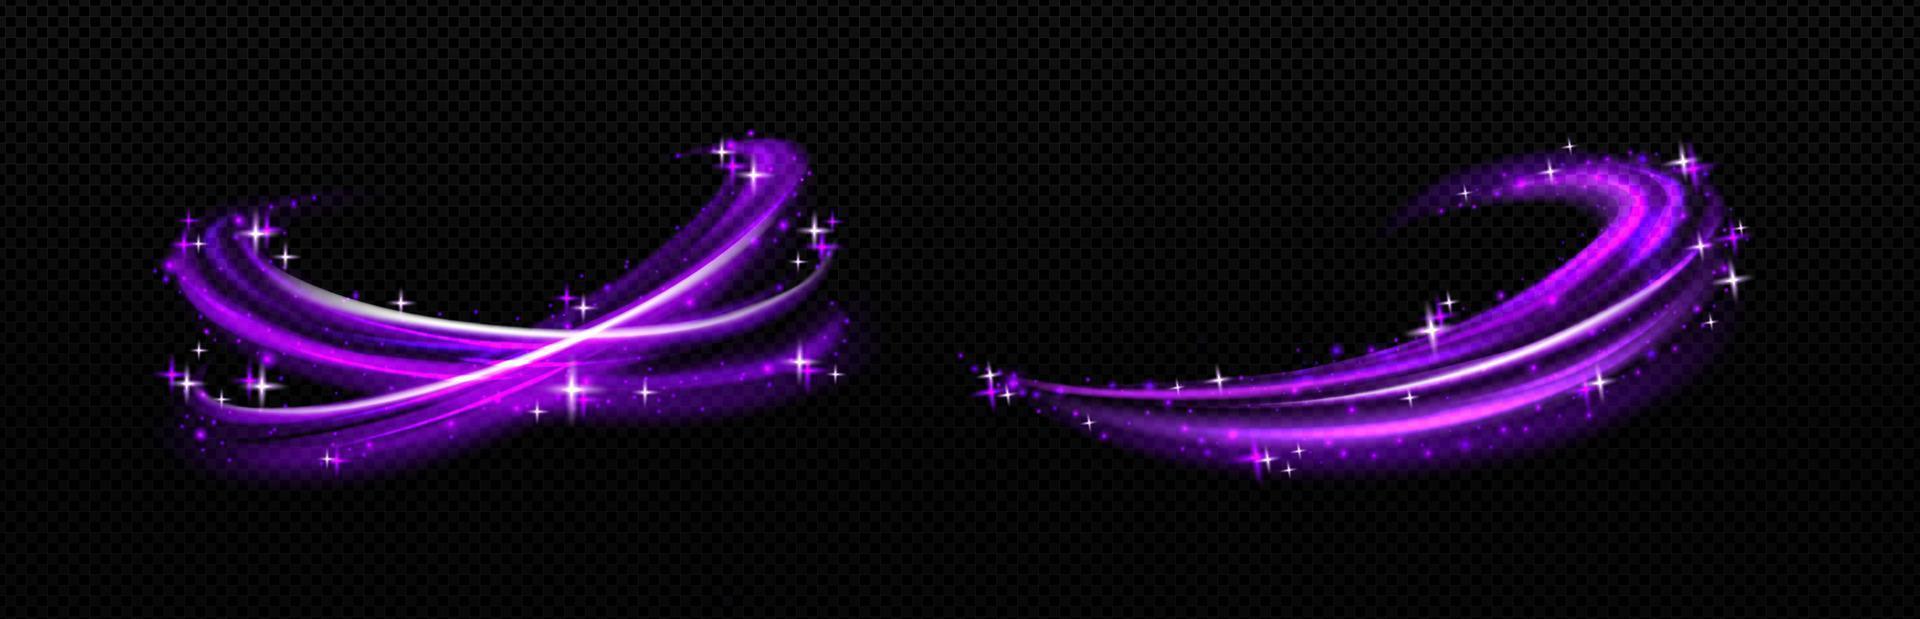 magischer effekt, lila luftwirbel mit weißen sternen vektor